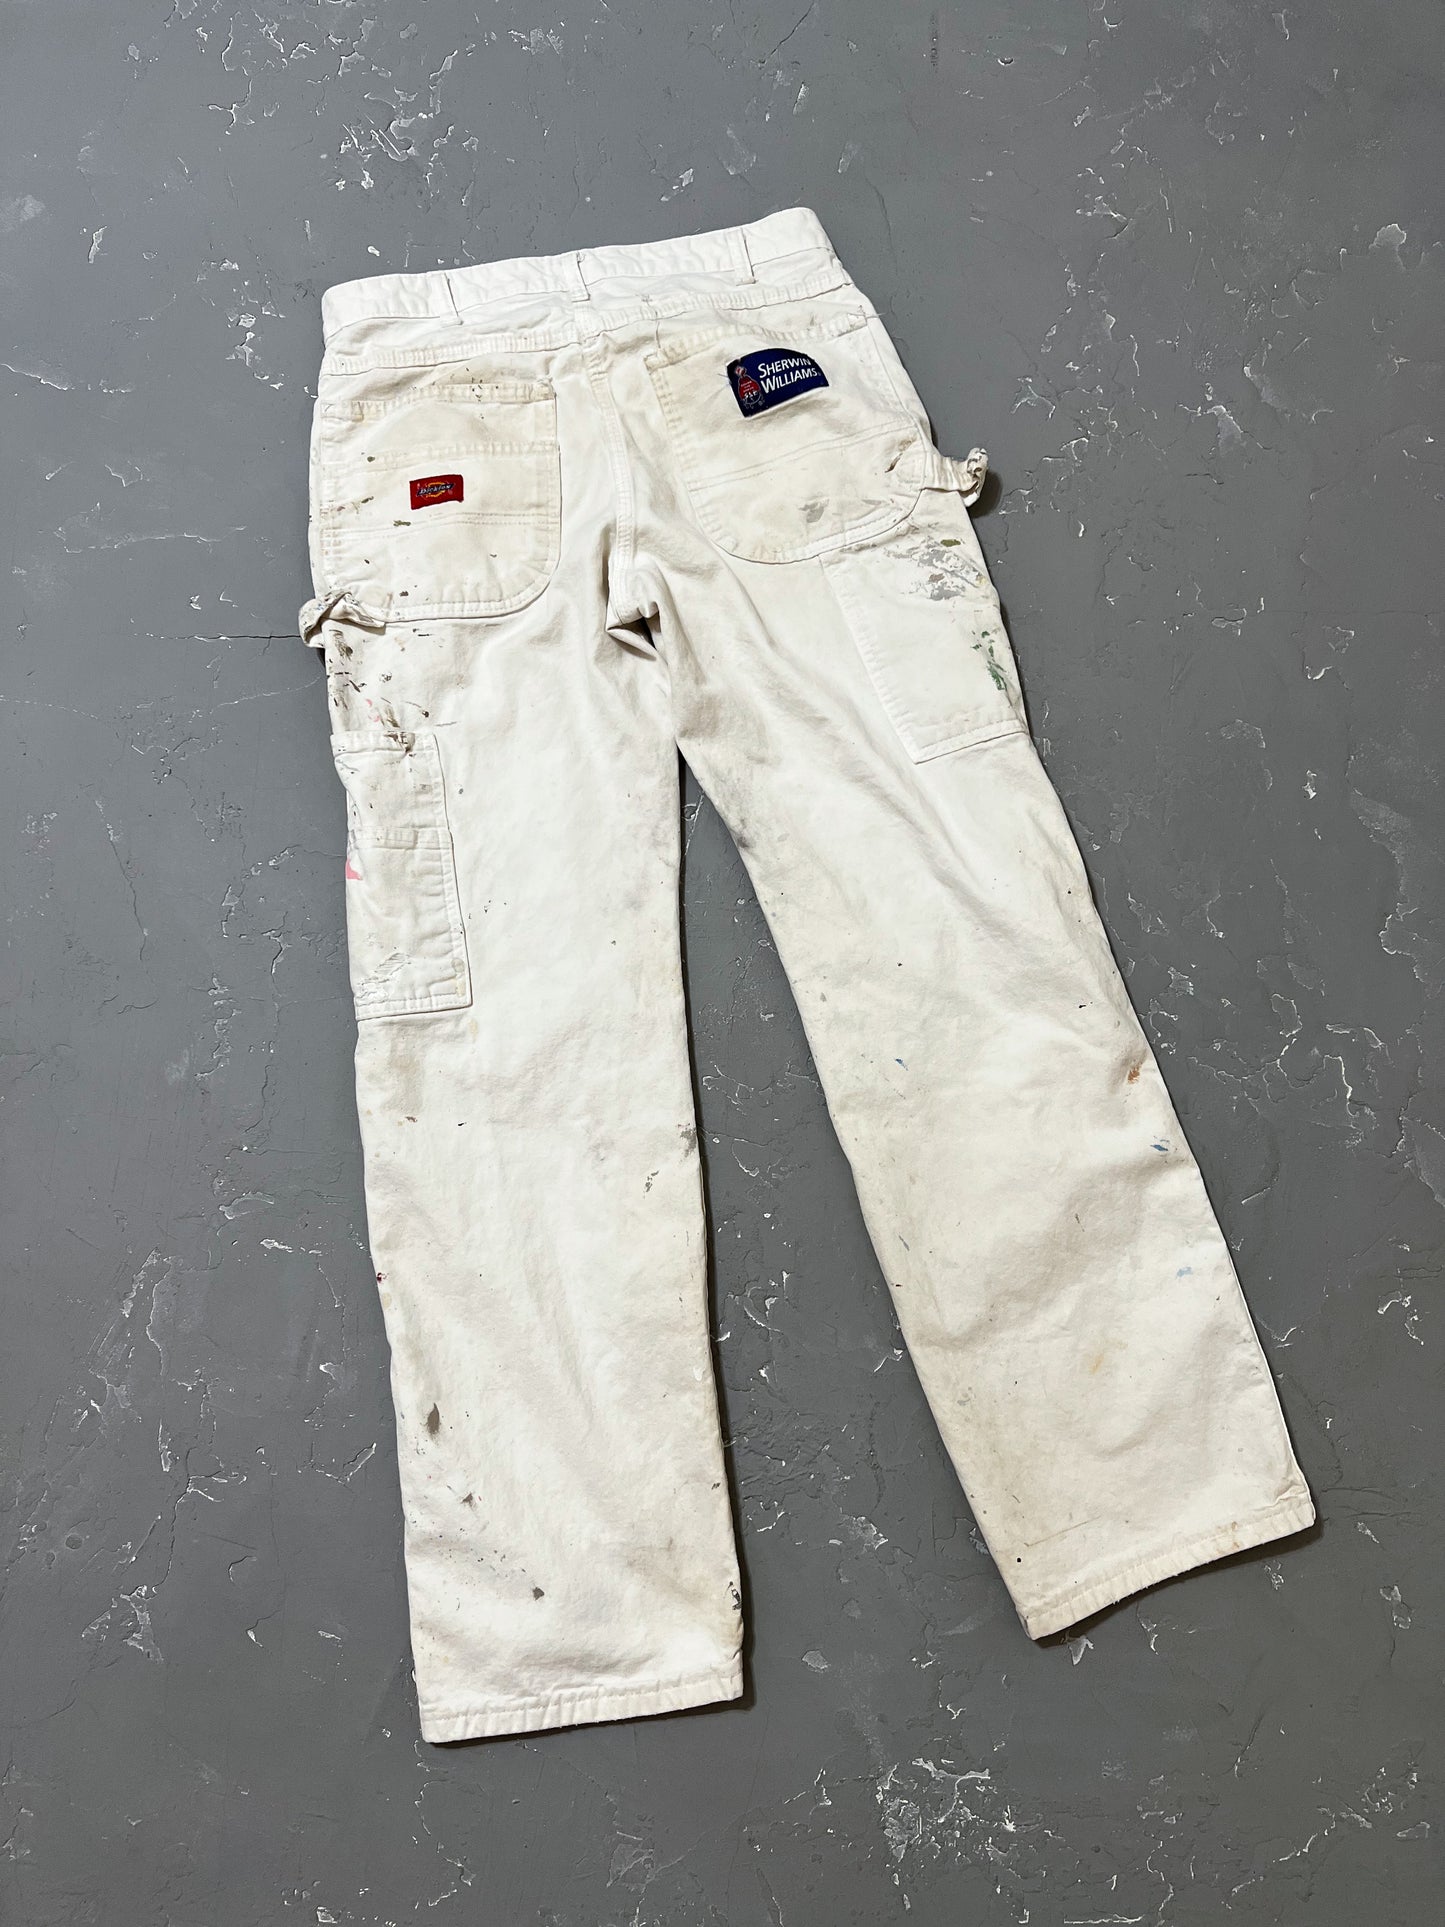 Dickies White Painted Work Pants [30 x 31]